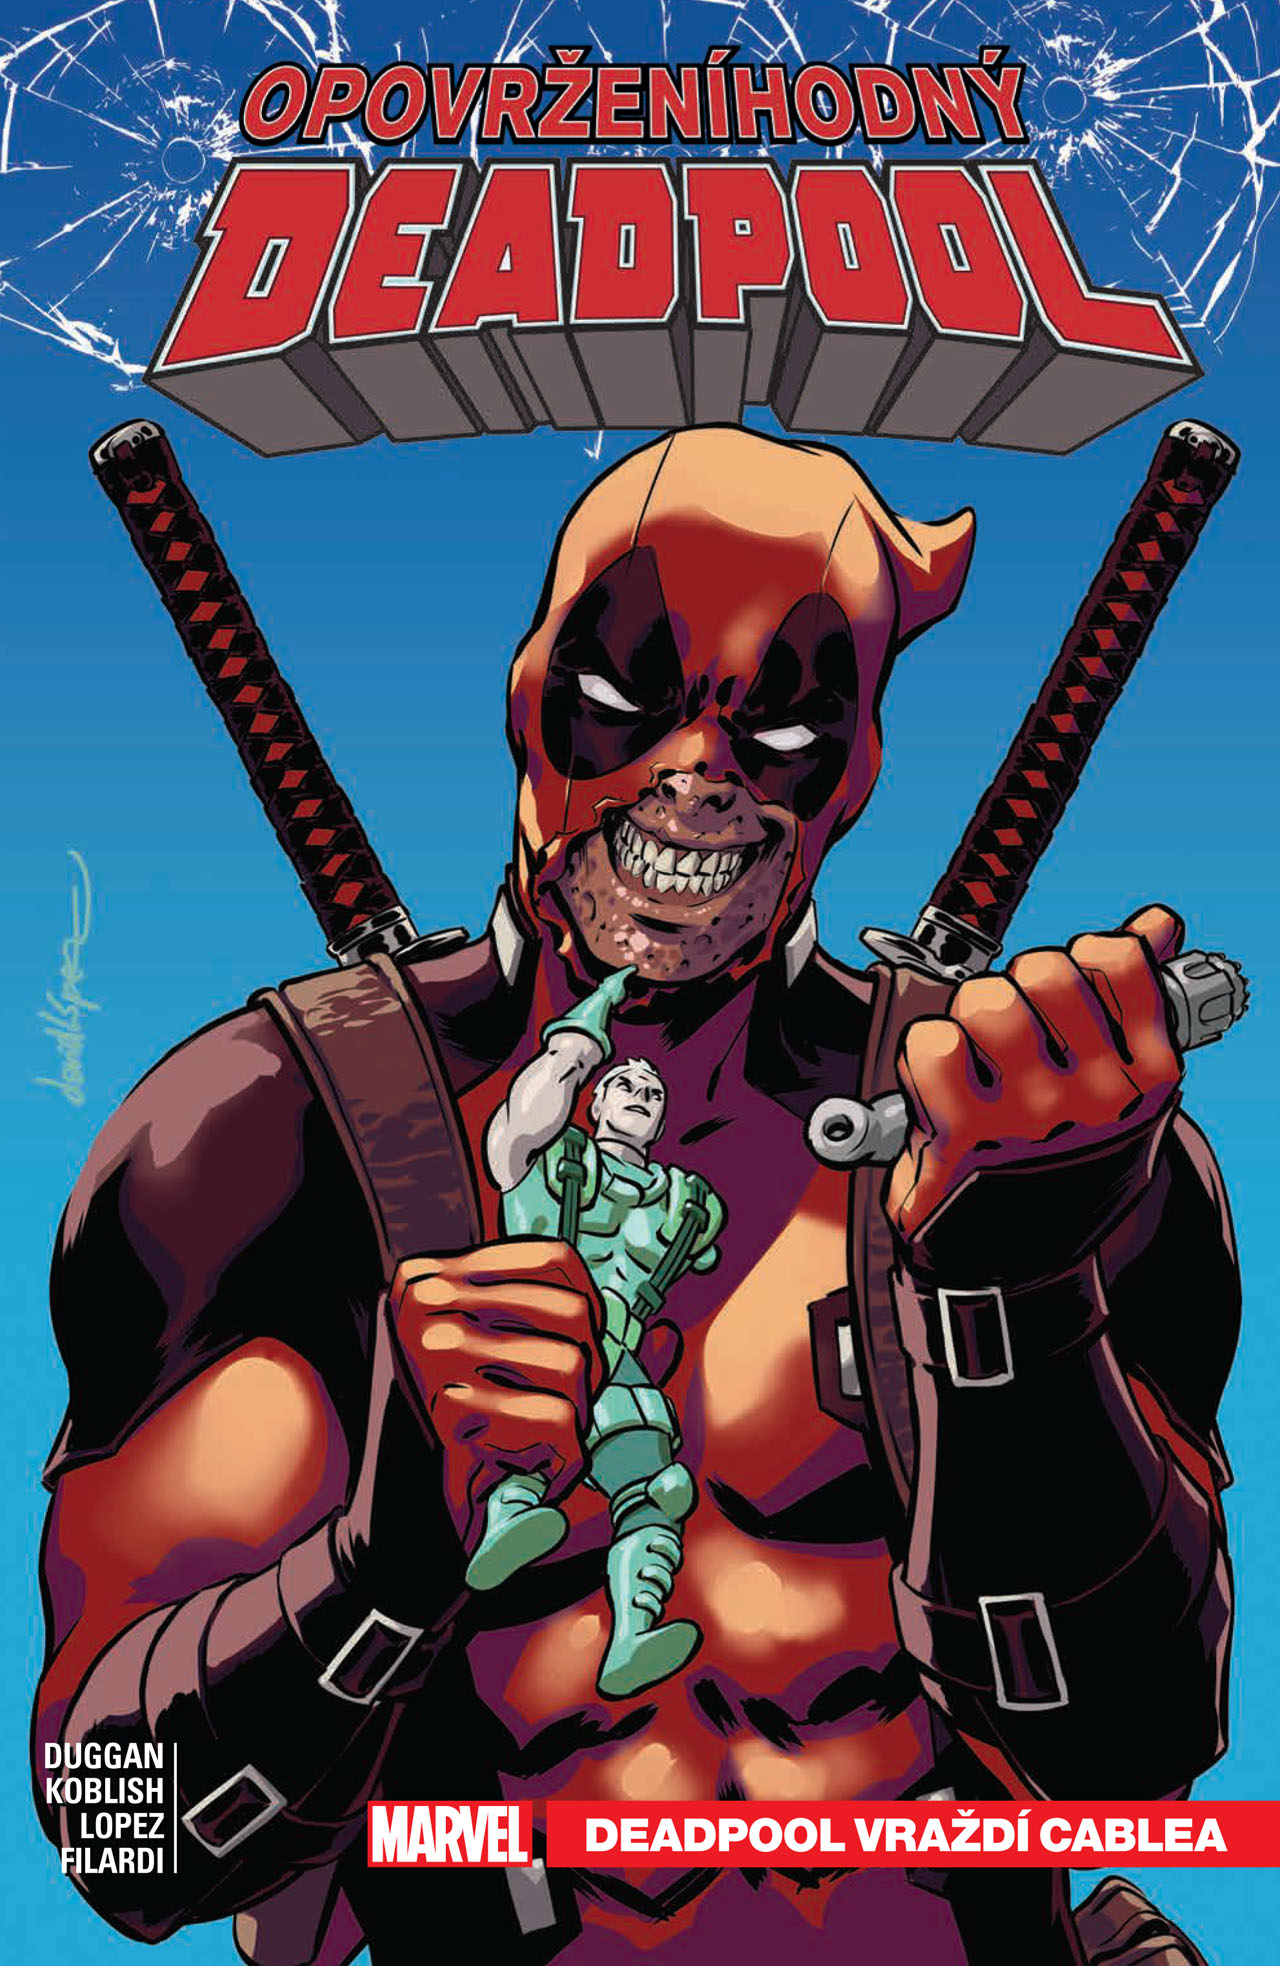 obrázek k novince - Opovrženíhodný Deadpool 1: Deadpool vraždí Cablea